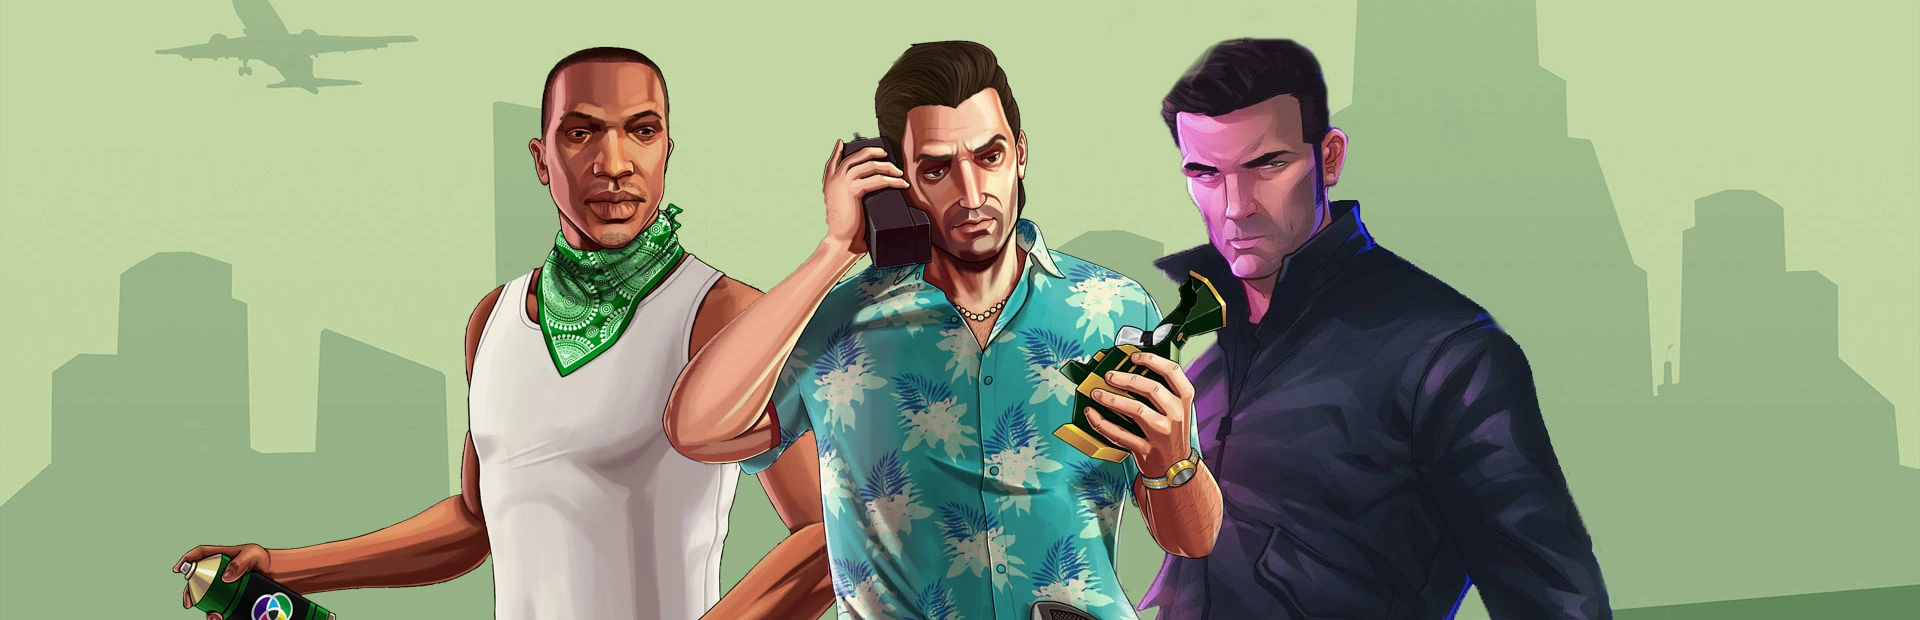 دانلود بازی Grand Theft Auto: The Trilogy برای PC | گیمباتو